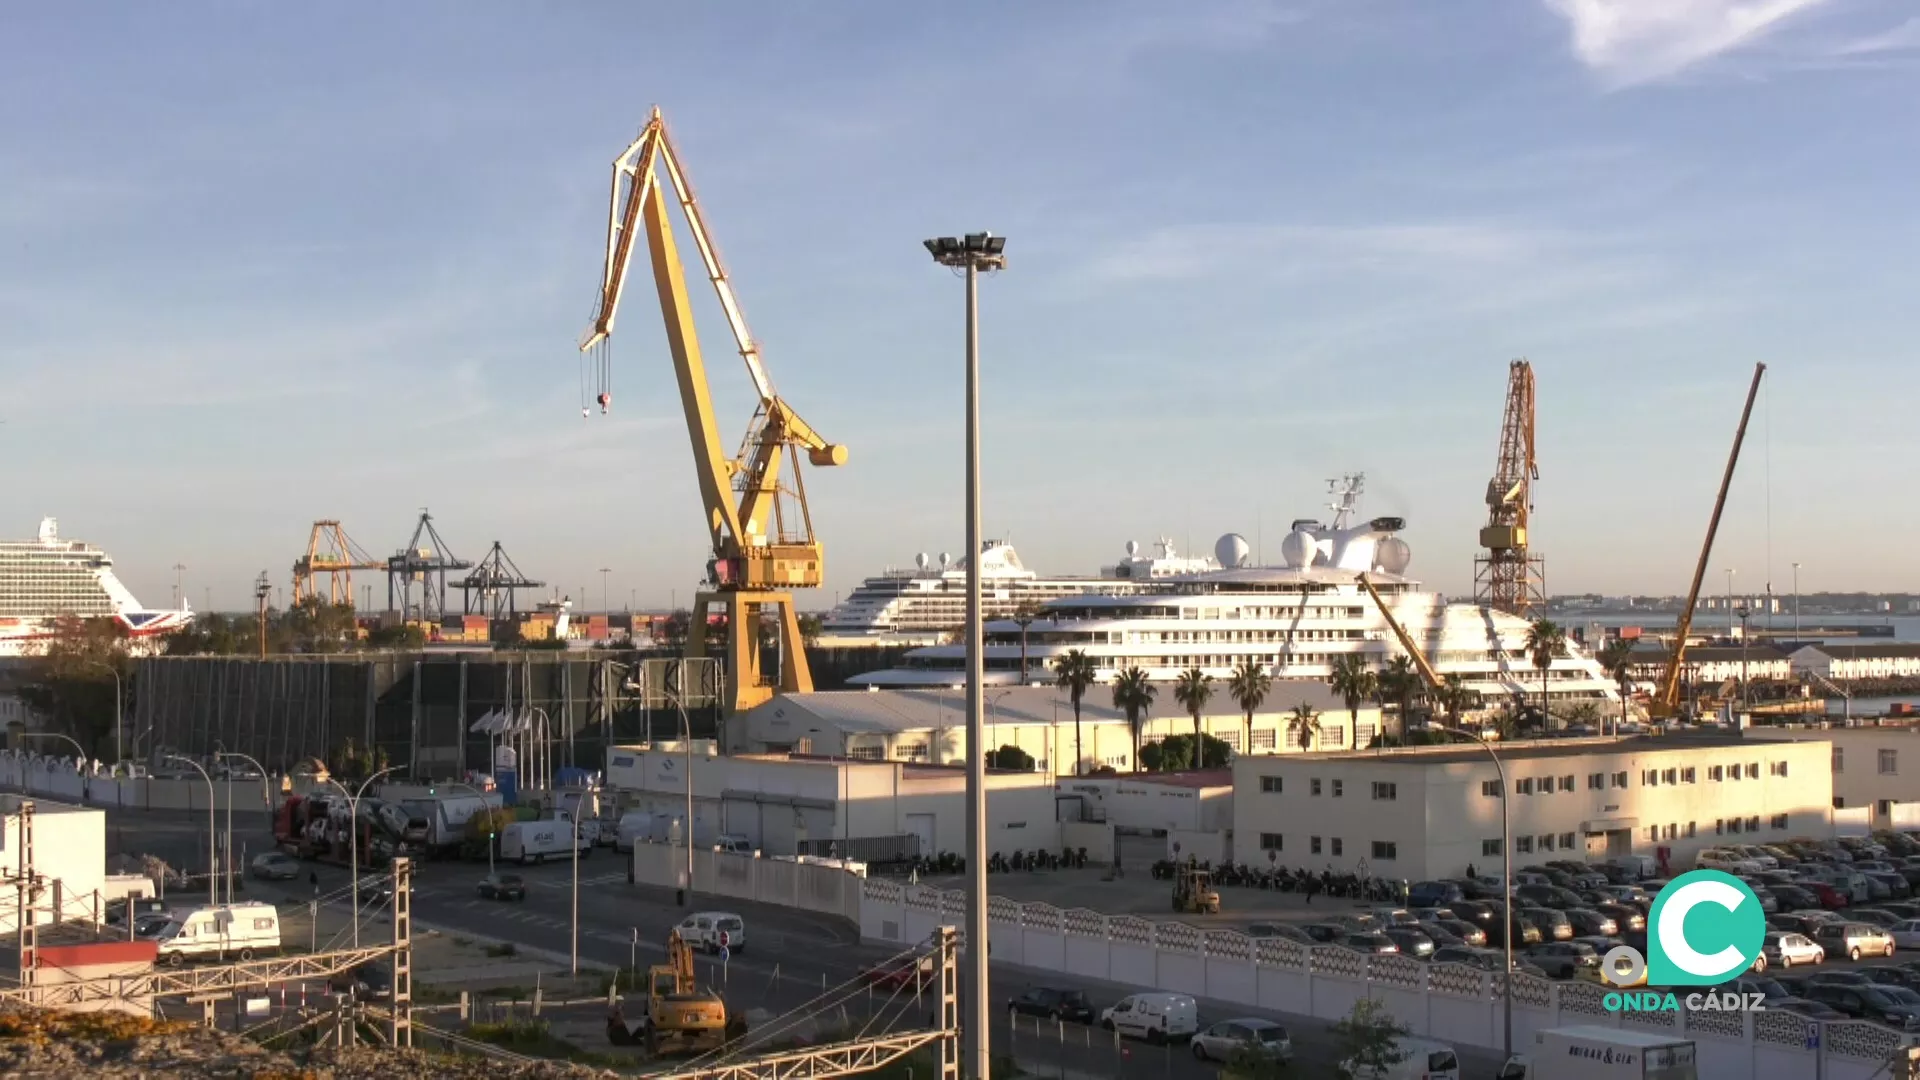 Cruceros en los diques de los astilleros de Cádiz 